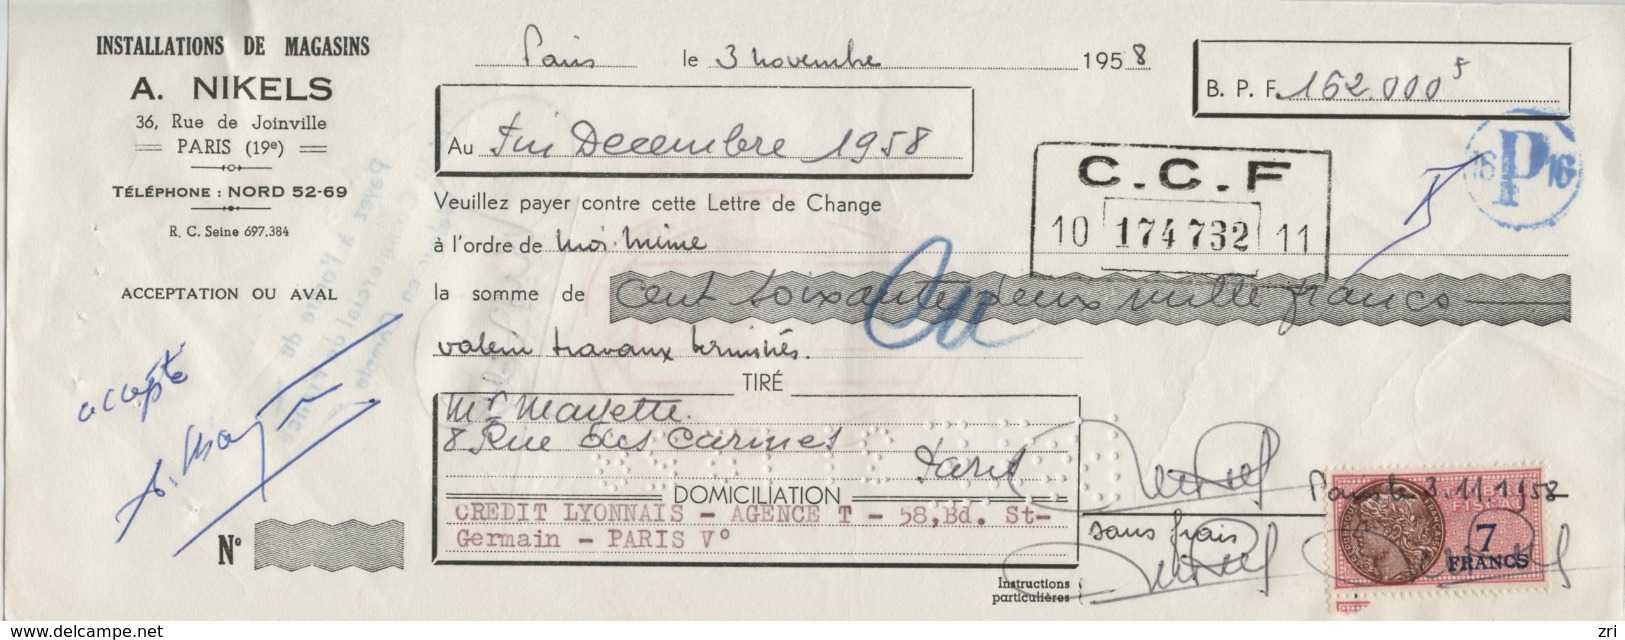 Lot De 32 Lettres De Change De 1958 à 1960 - Installation De Magasins A. Nikels (Paris) - CCF - Bills Of Exchange